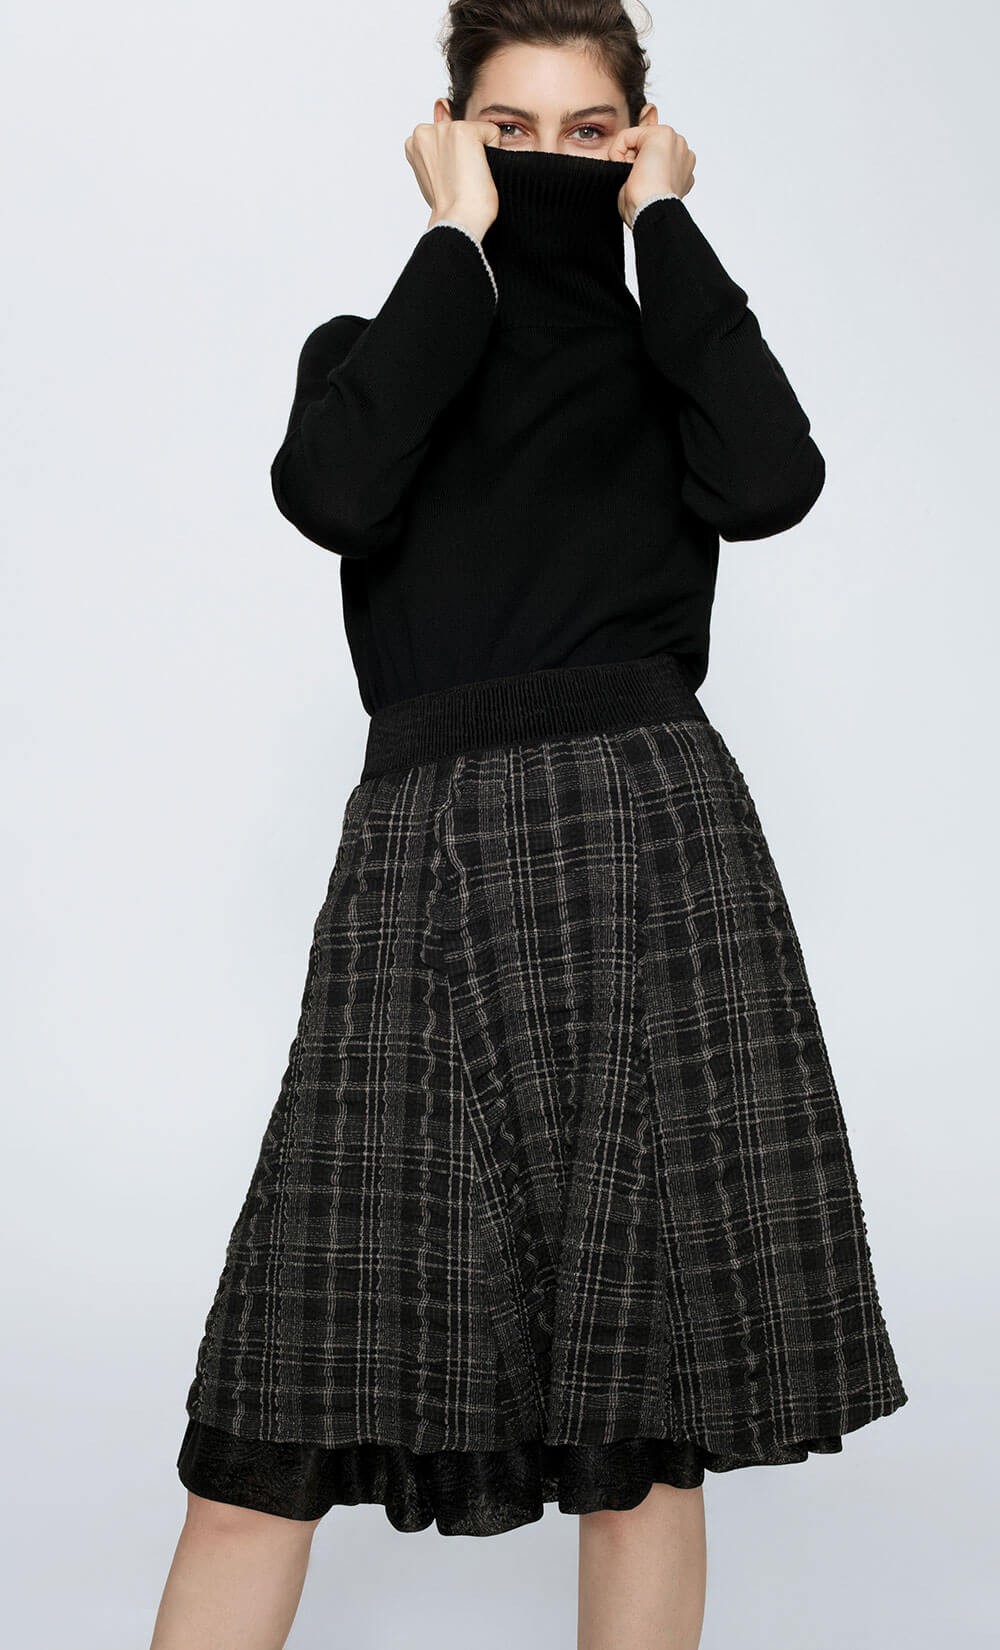 Crinolin Bela Skirt